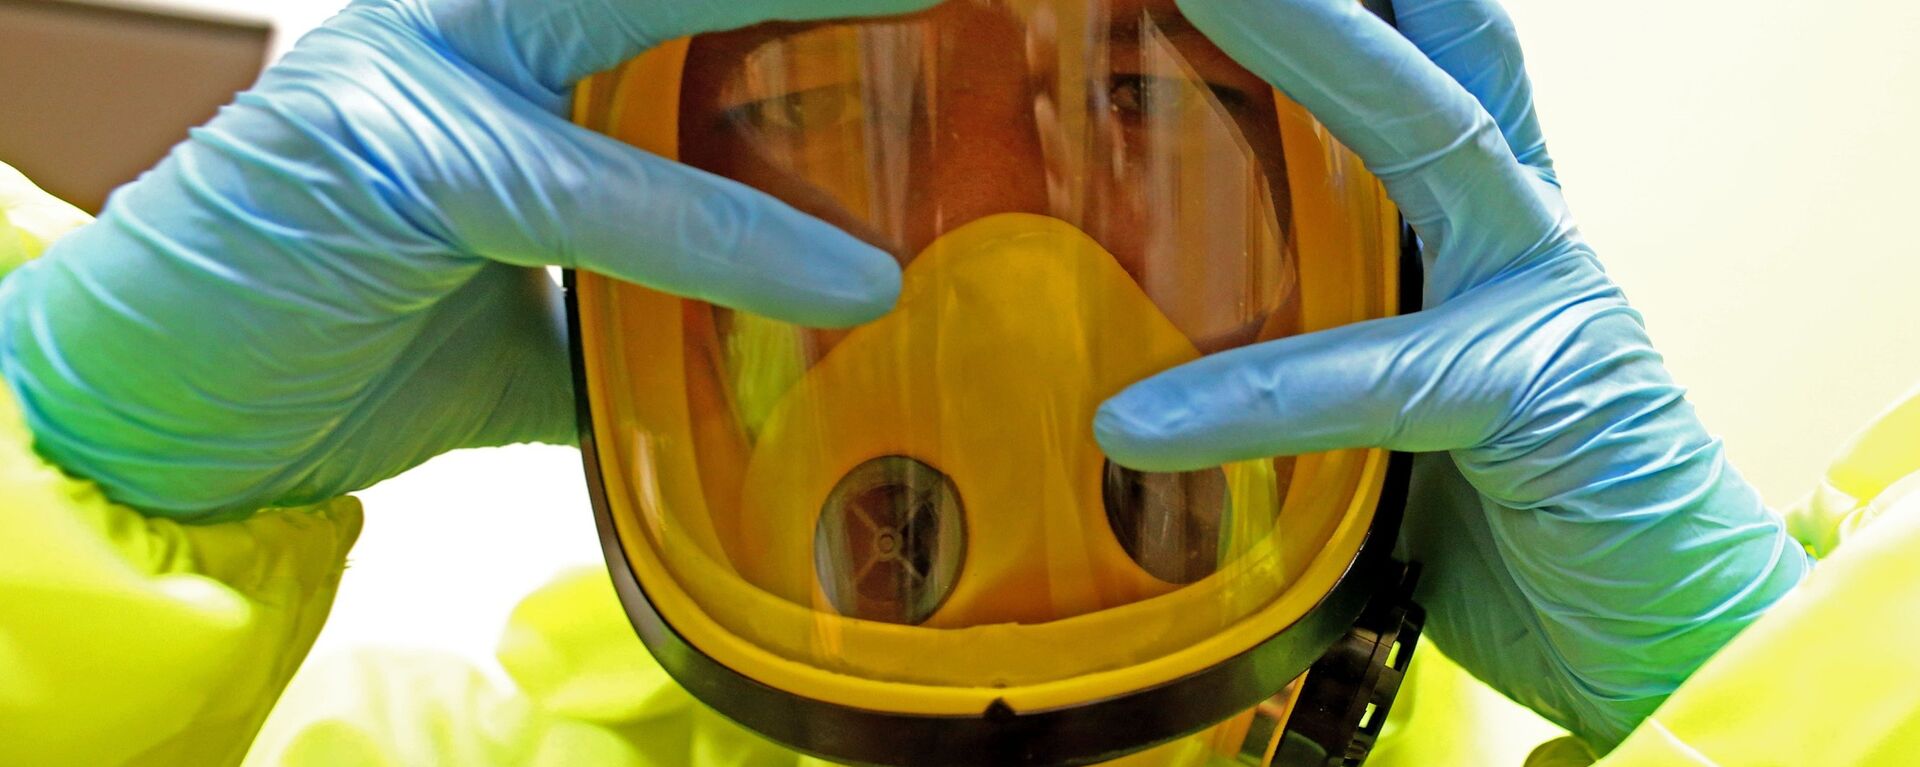 Медицинский персонал отрабатывает действия на случай поступления больных с подозрением на вирус Эбола. - Sputnik Latvija, 1920, 07.10.2019